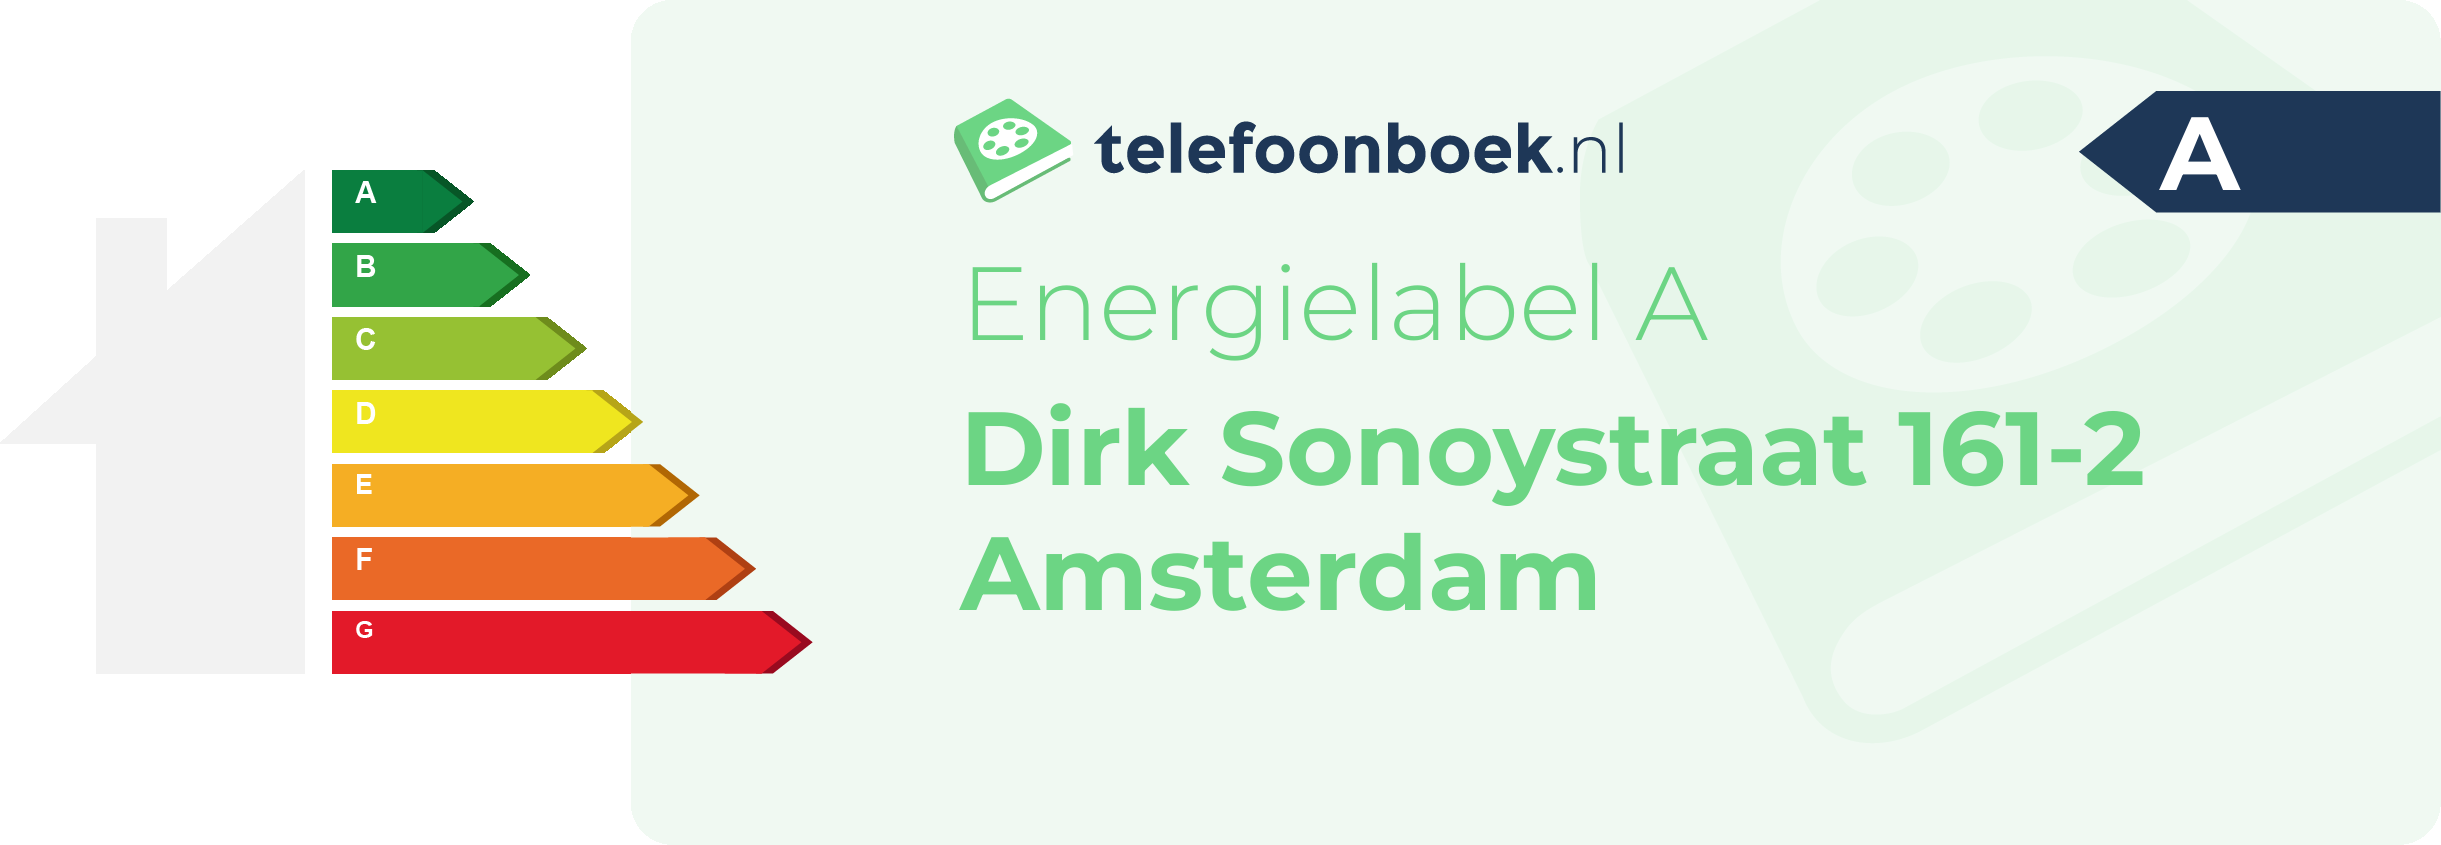 Energielabel Dirk Sonoystraat 161-2 Amsterdam